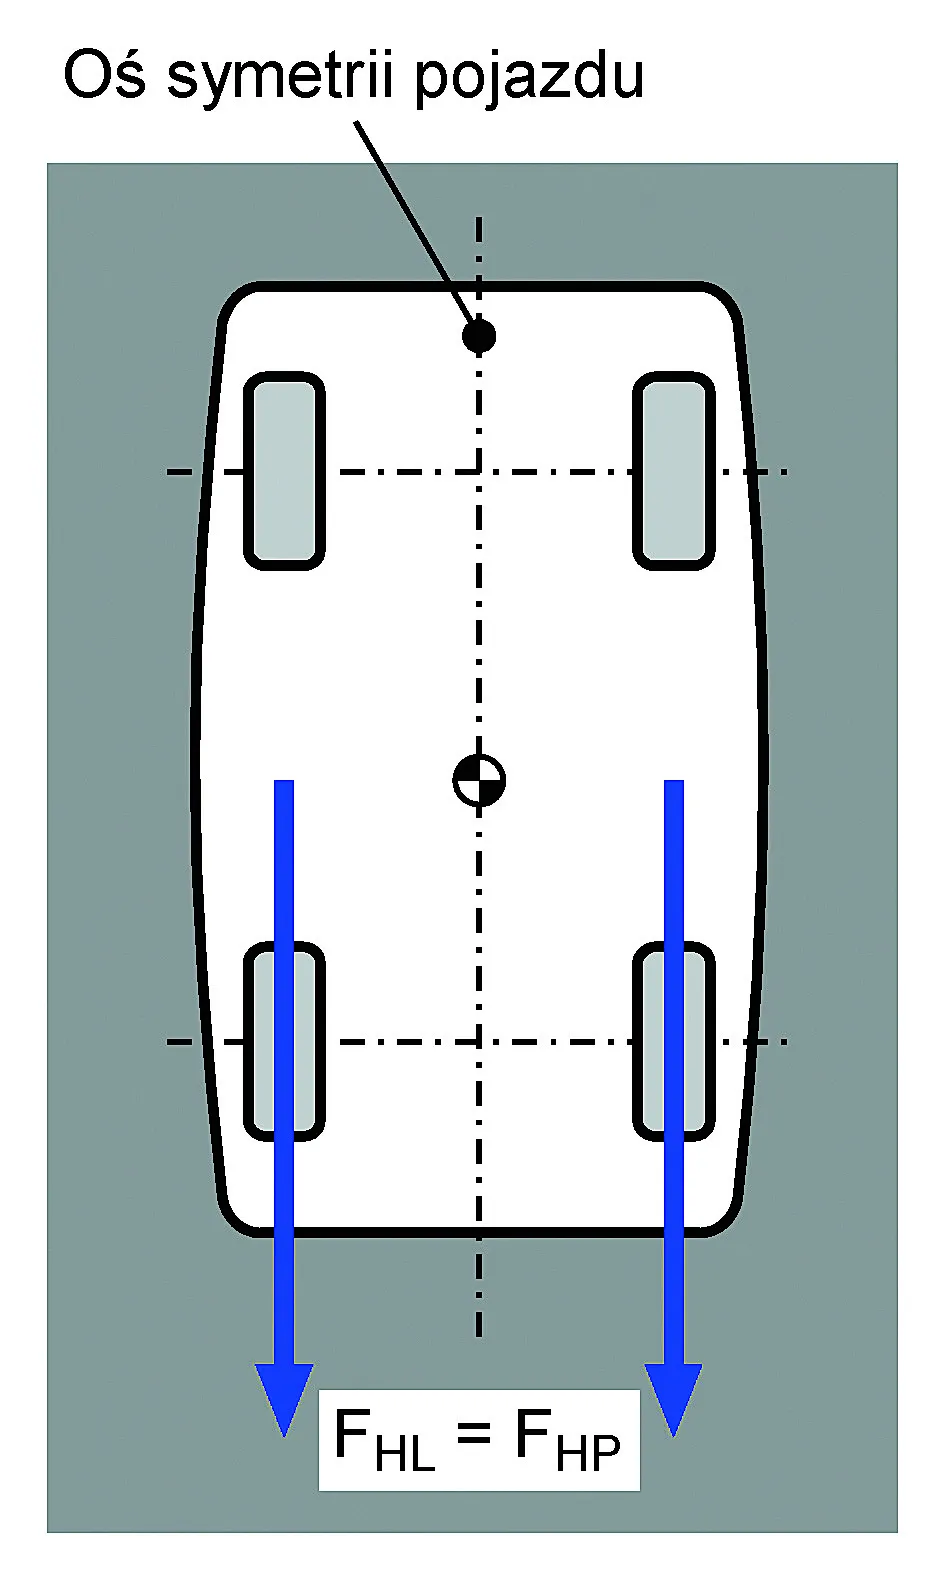 Hamowanie samochodu
na nawierzchni o jednakowej
wartości współczynnika tarcia.
Oznaczenia na rysunku: FHL -
suma sił hamowania po lewej
stronie samochodu; FHP - suma
sił hamowania po prawej
stronie samochodu.